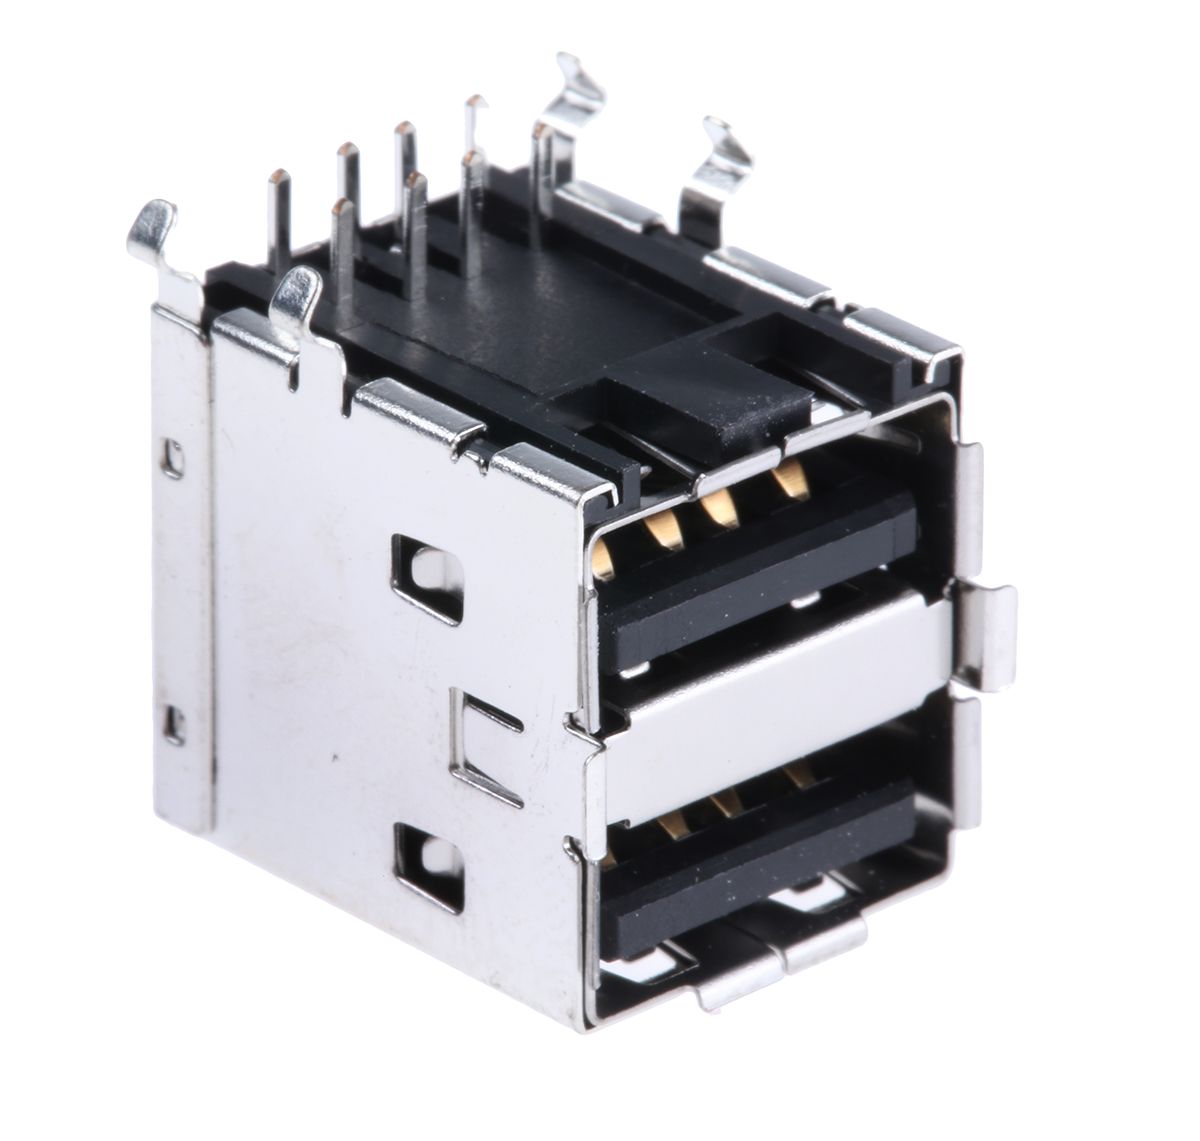 Conector USB Molex 67298-3091, Hembra, 2 puertos, Ángulo de 90° , Orificio Pasante, 30,0 V., 1.5A 67298